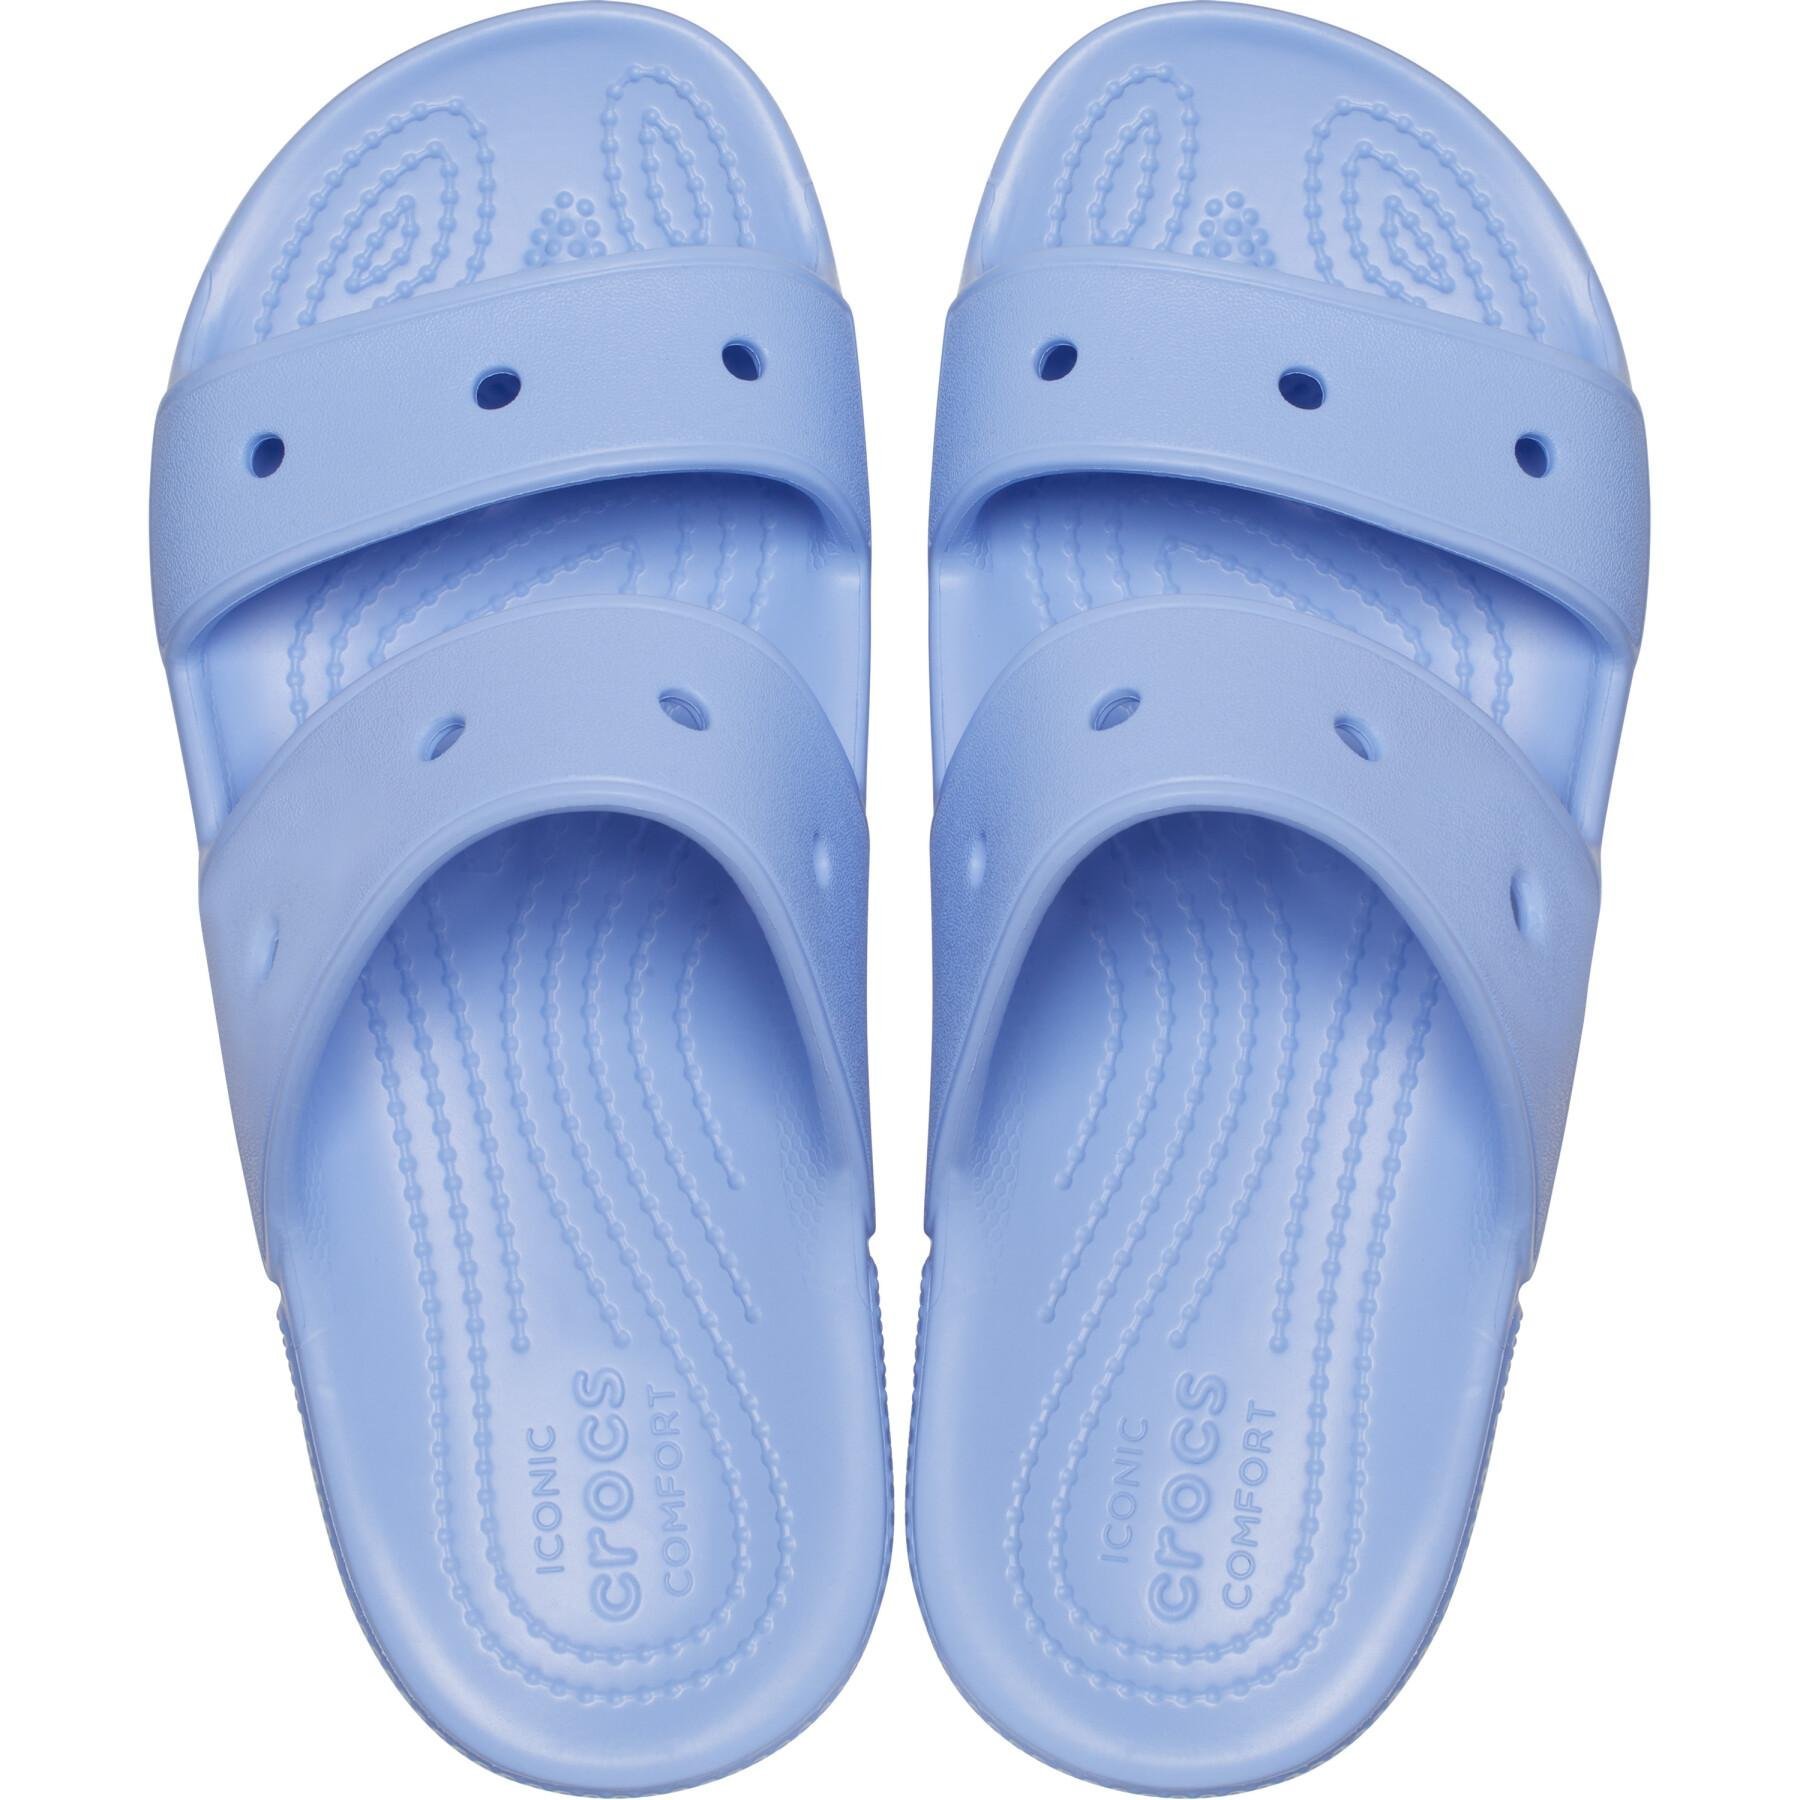 Crocs Classic Sandal 39-40 EUR